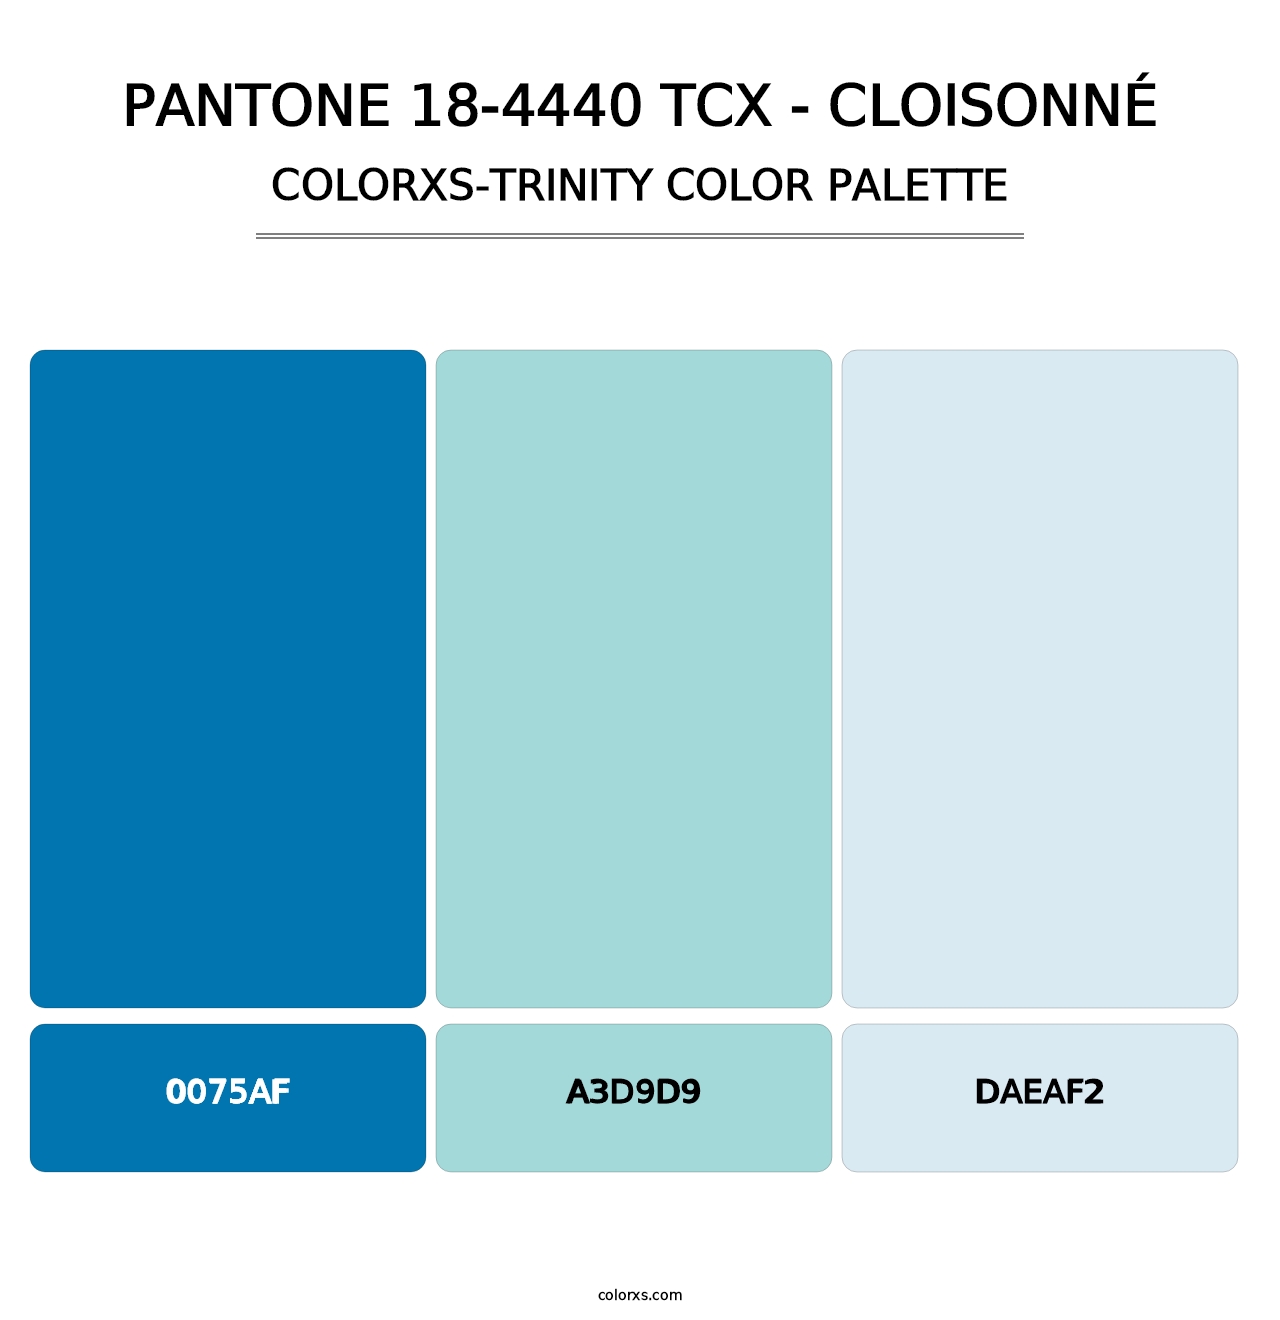 PANTONE 18-4440 TCX - Cloisonné - Colorxs Trinity Palette